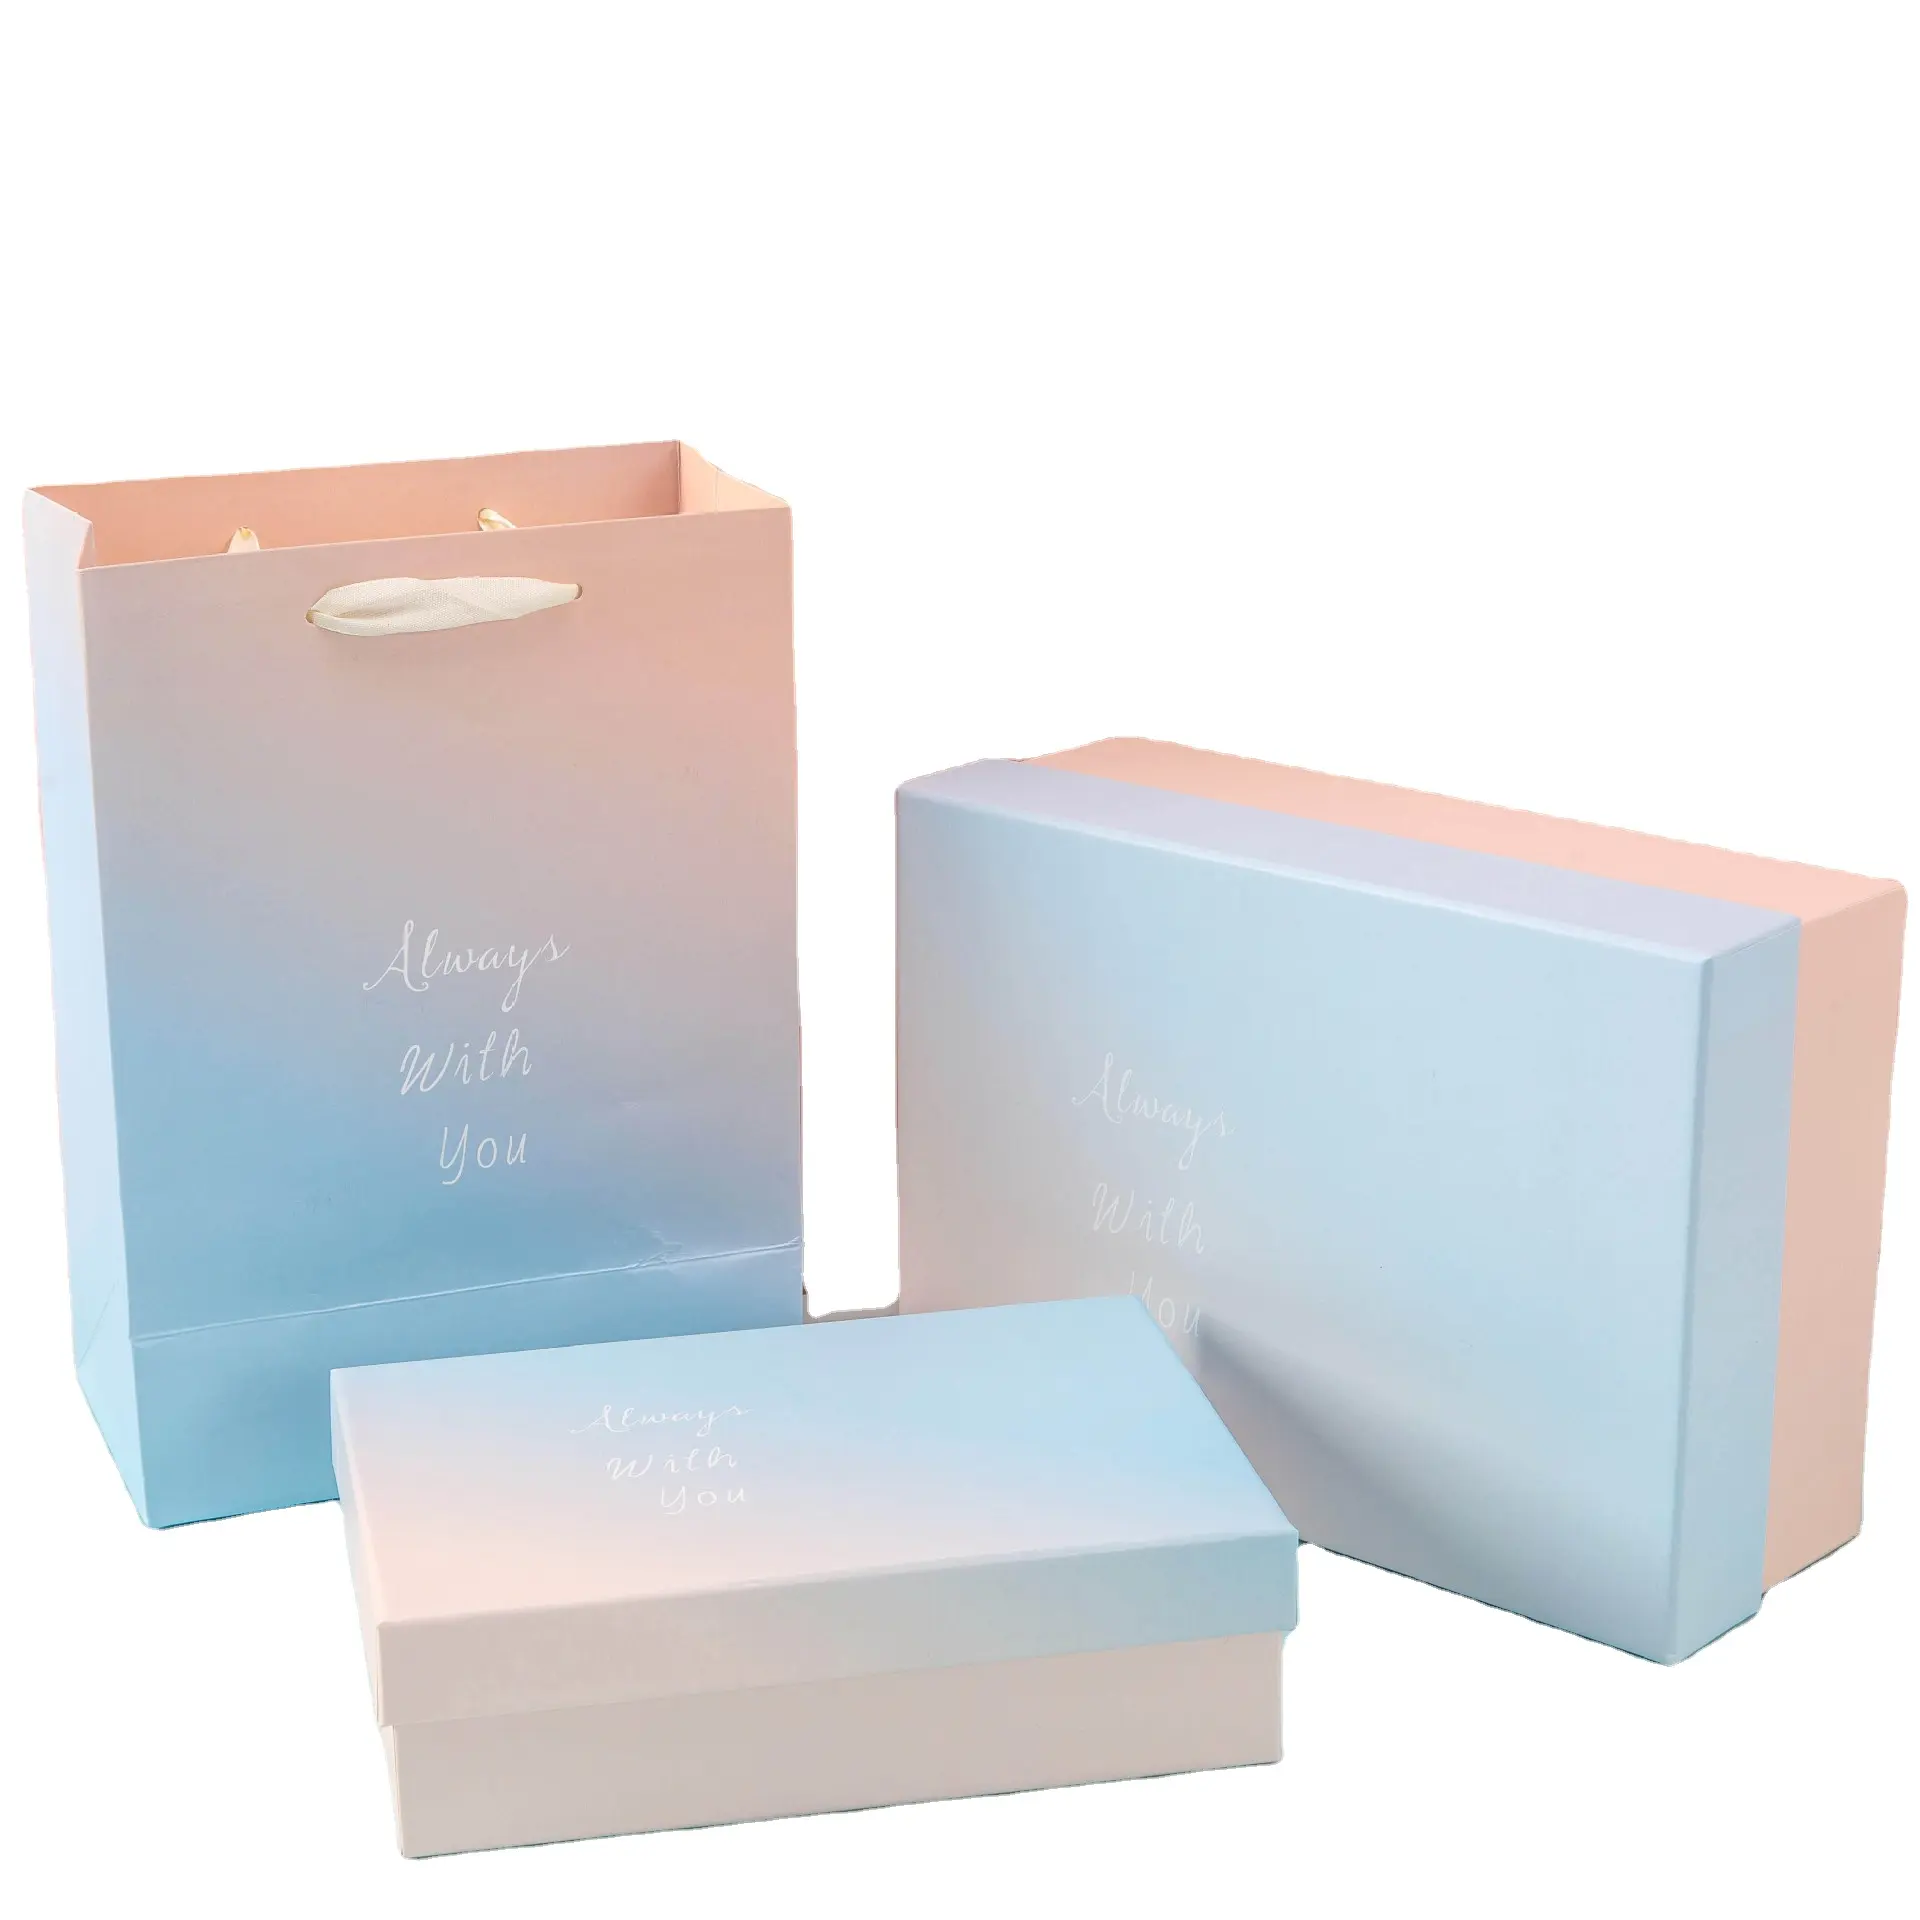 Caixas de embalagem de papel para presente, embalagem de papel para festa de casamento, caixa de convite